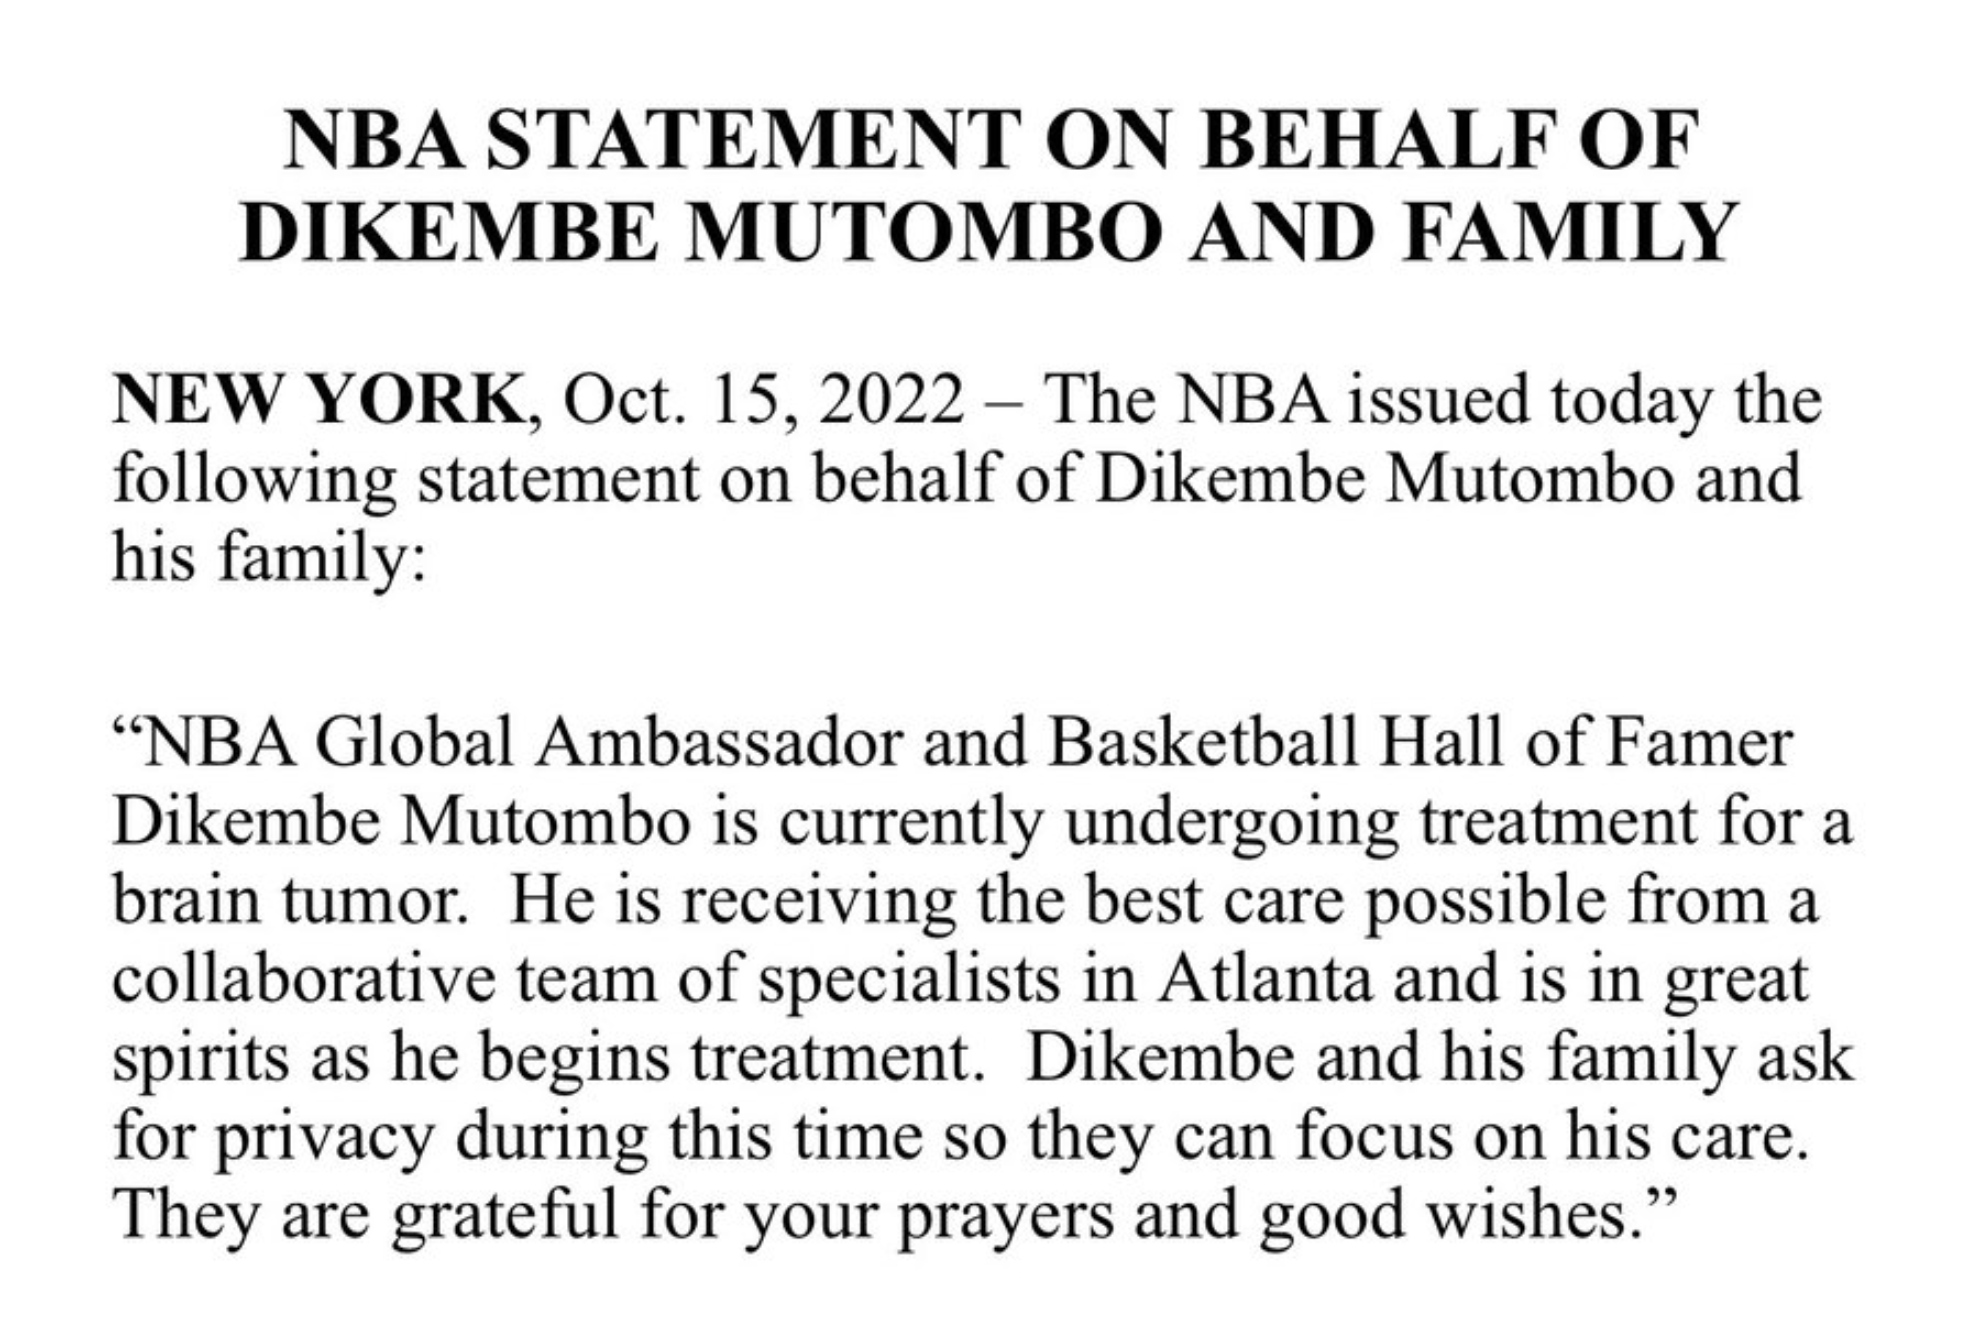 Dikembe Mutombo, leyenda de la NBA, inicia tratamiento contra tumor cerebral